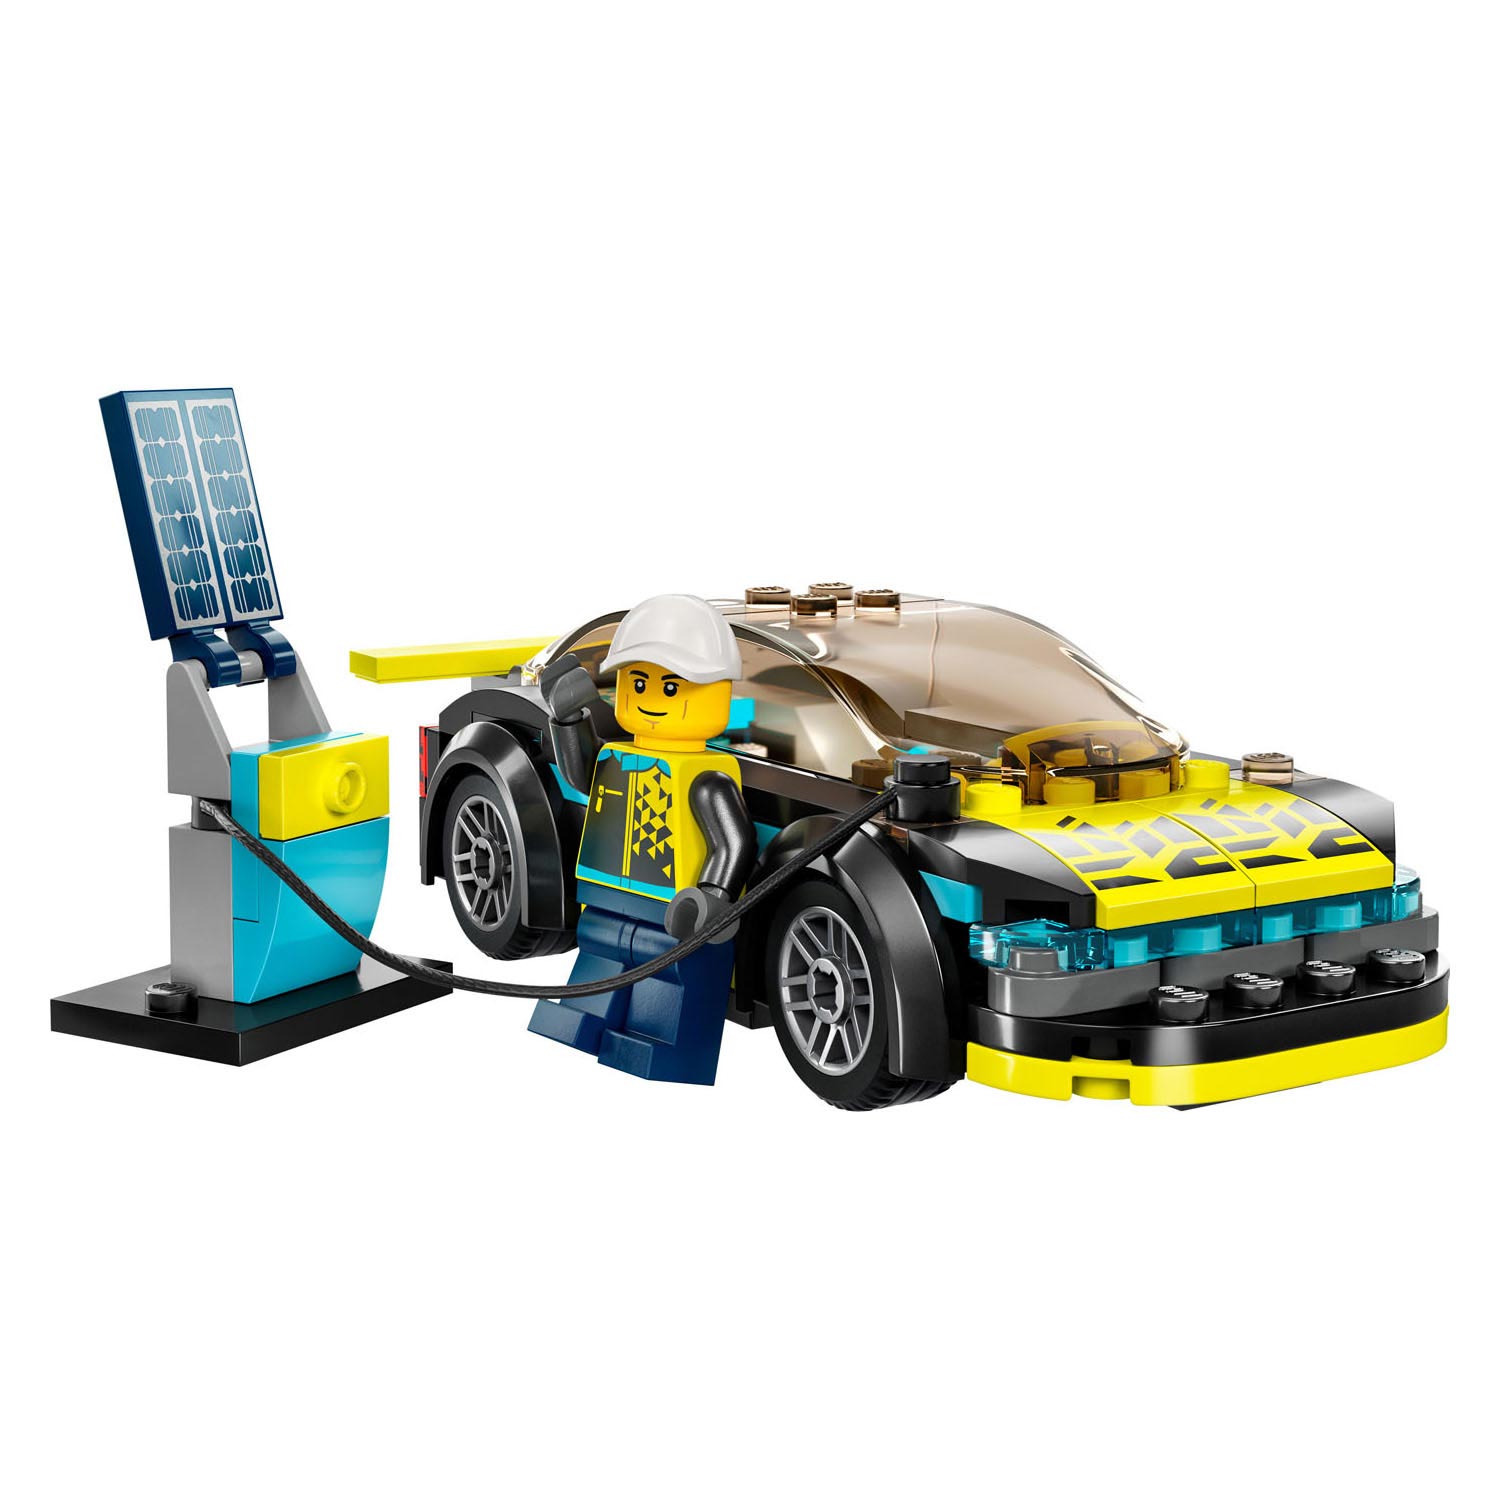 LEGO City 60383 La voiture de sport électrique